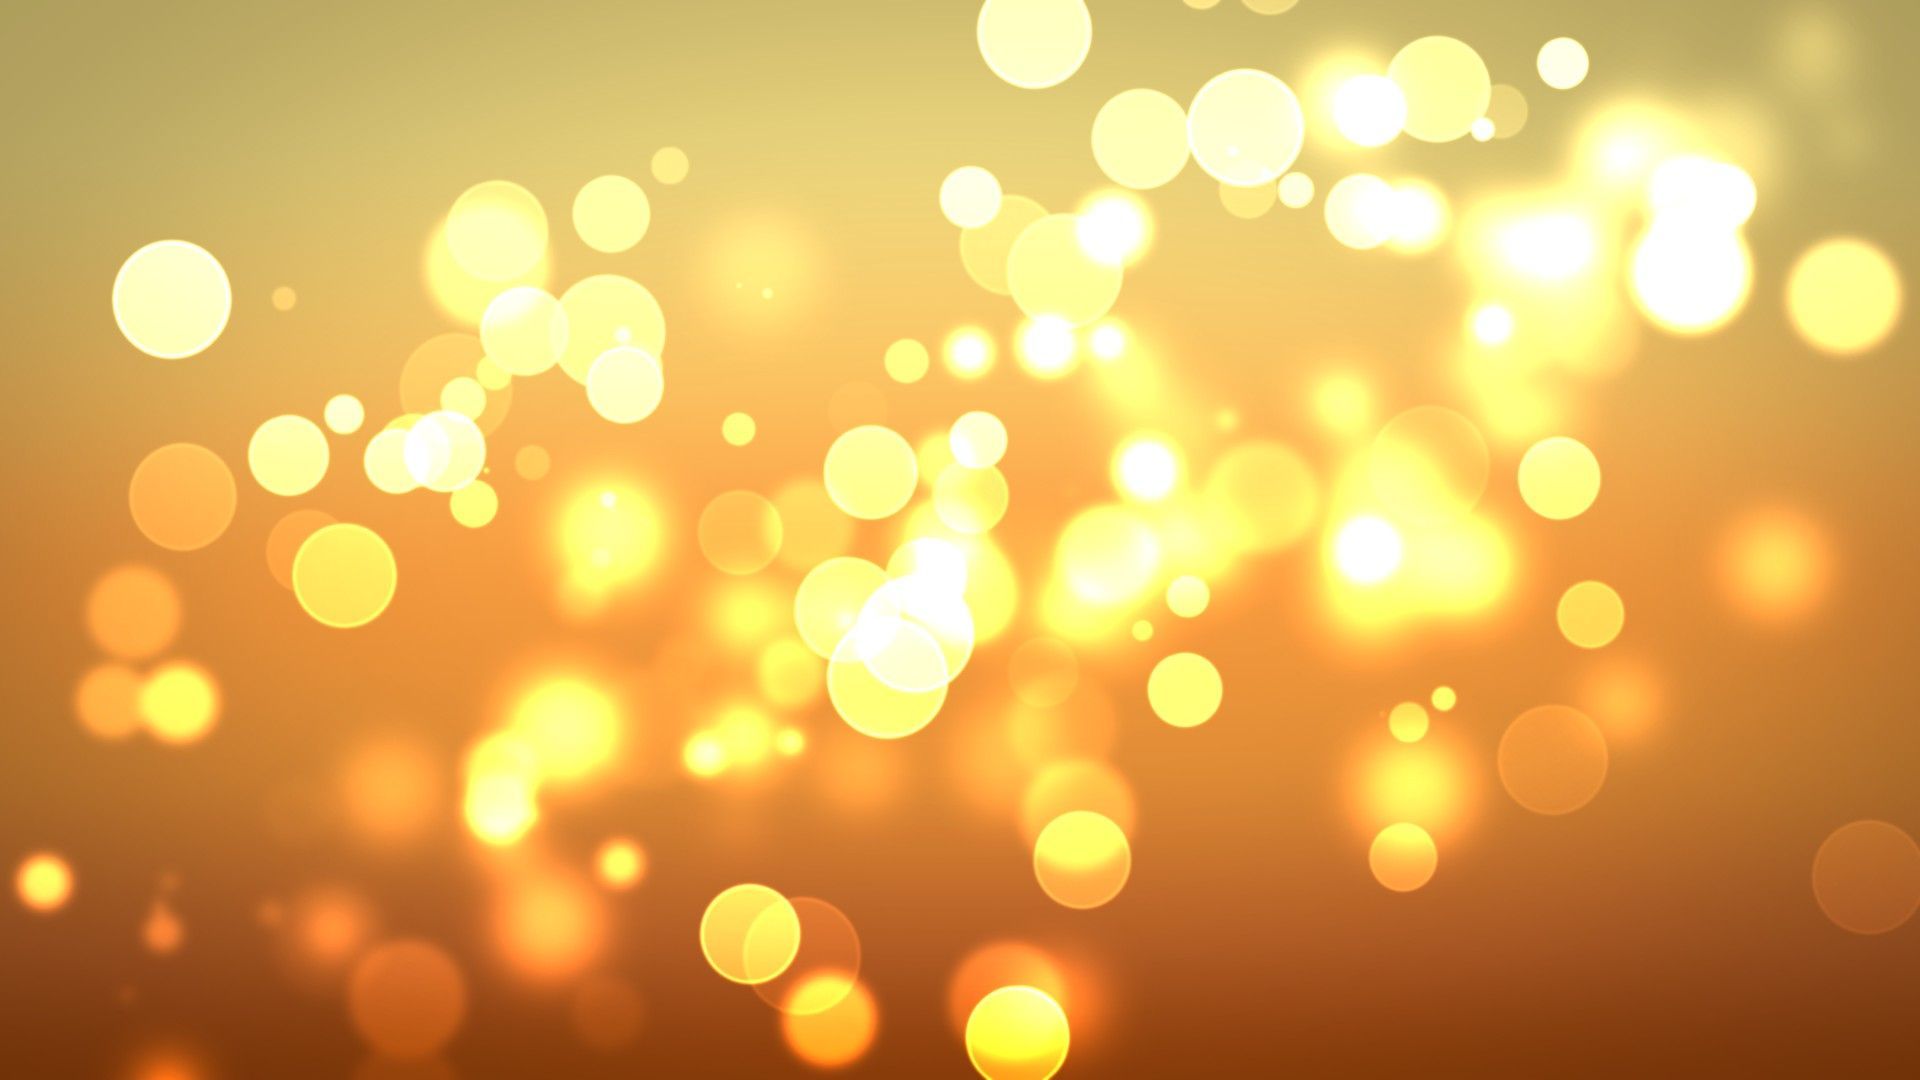 Hình nền HD bong bóng ánh sáng vàng sẽ đem lại cho bạn cảm giác thư giãn và hạnh phúc. Với các gam màu tươi sáng và đầy năng lượng, hình ảnh này sẽ khiến cho màn hình của bạn trở nên sống động và sinh động. Hãy thưởng thức những hình ảnh đẹp và tạo động lực cho bạn trên hình nền HD bong bóng ánh sáng vàng này.